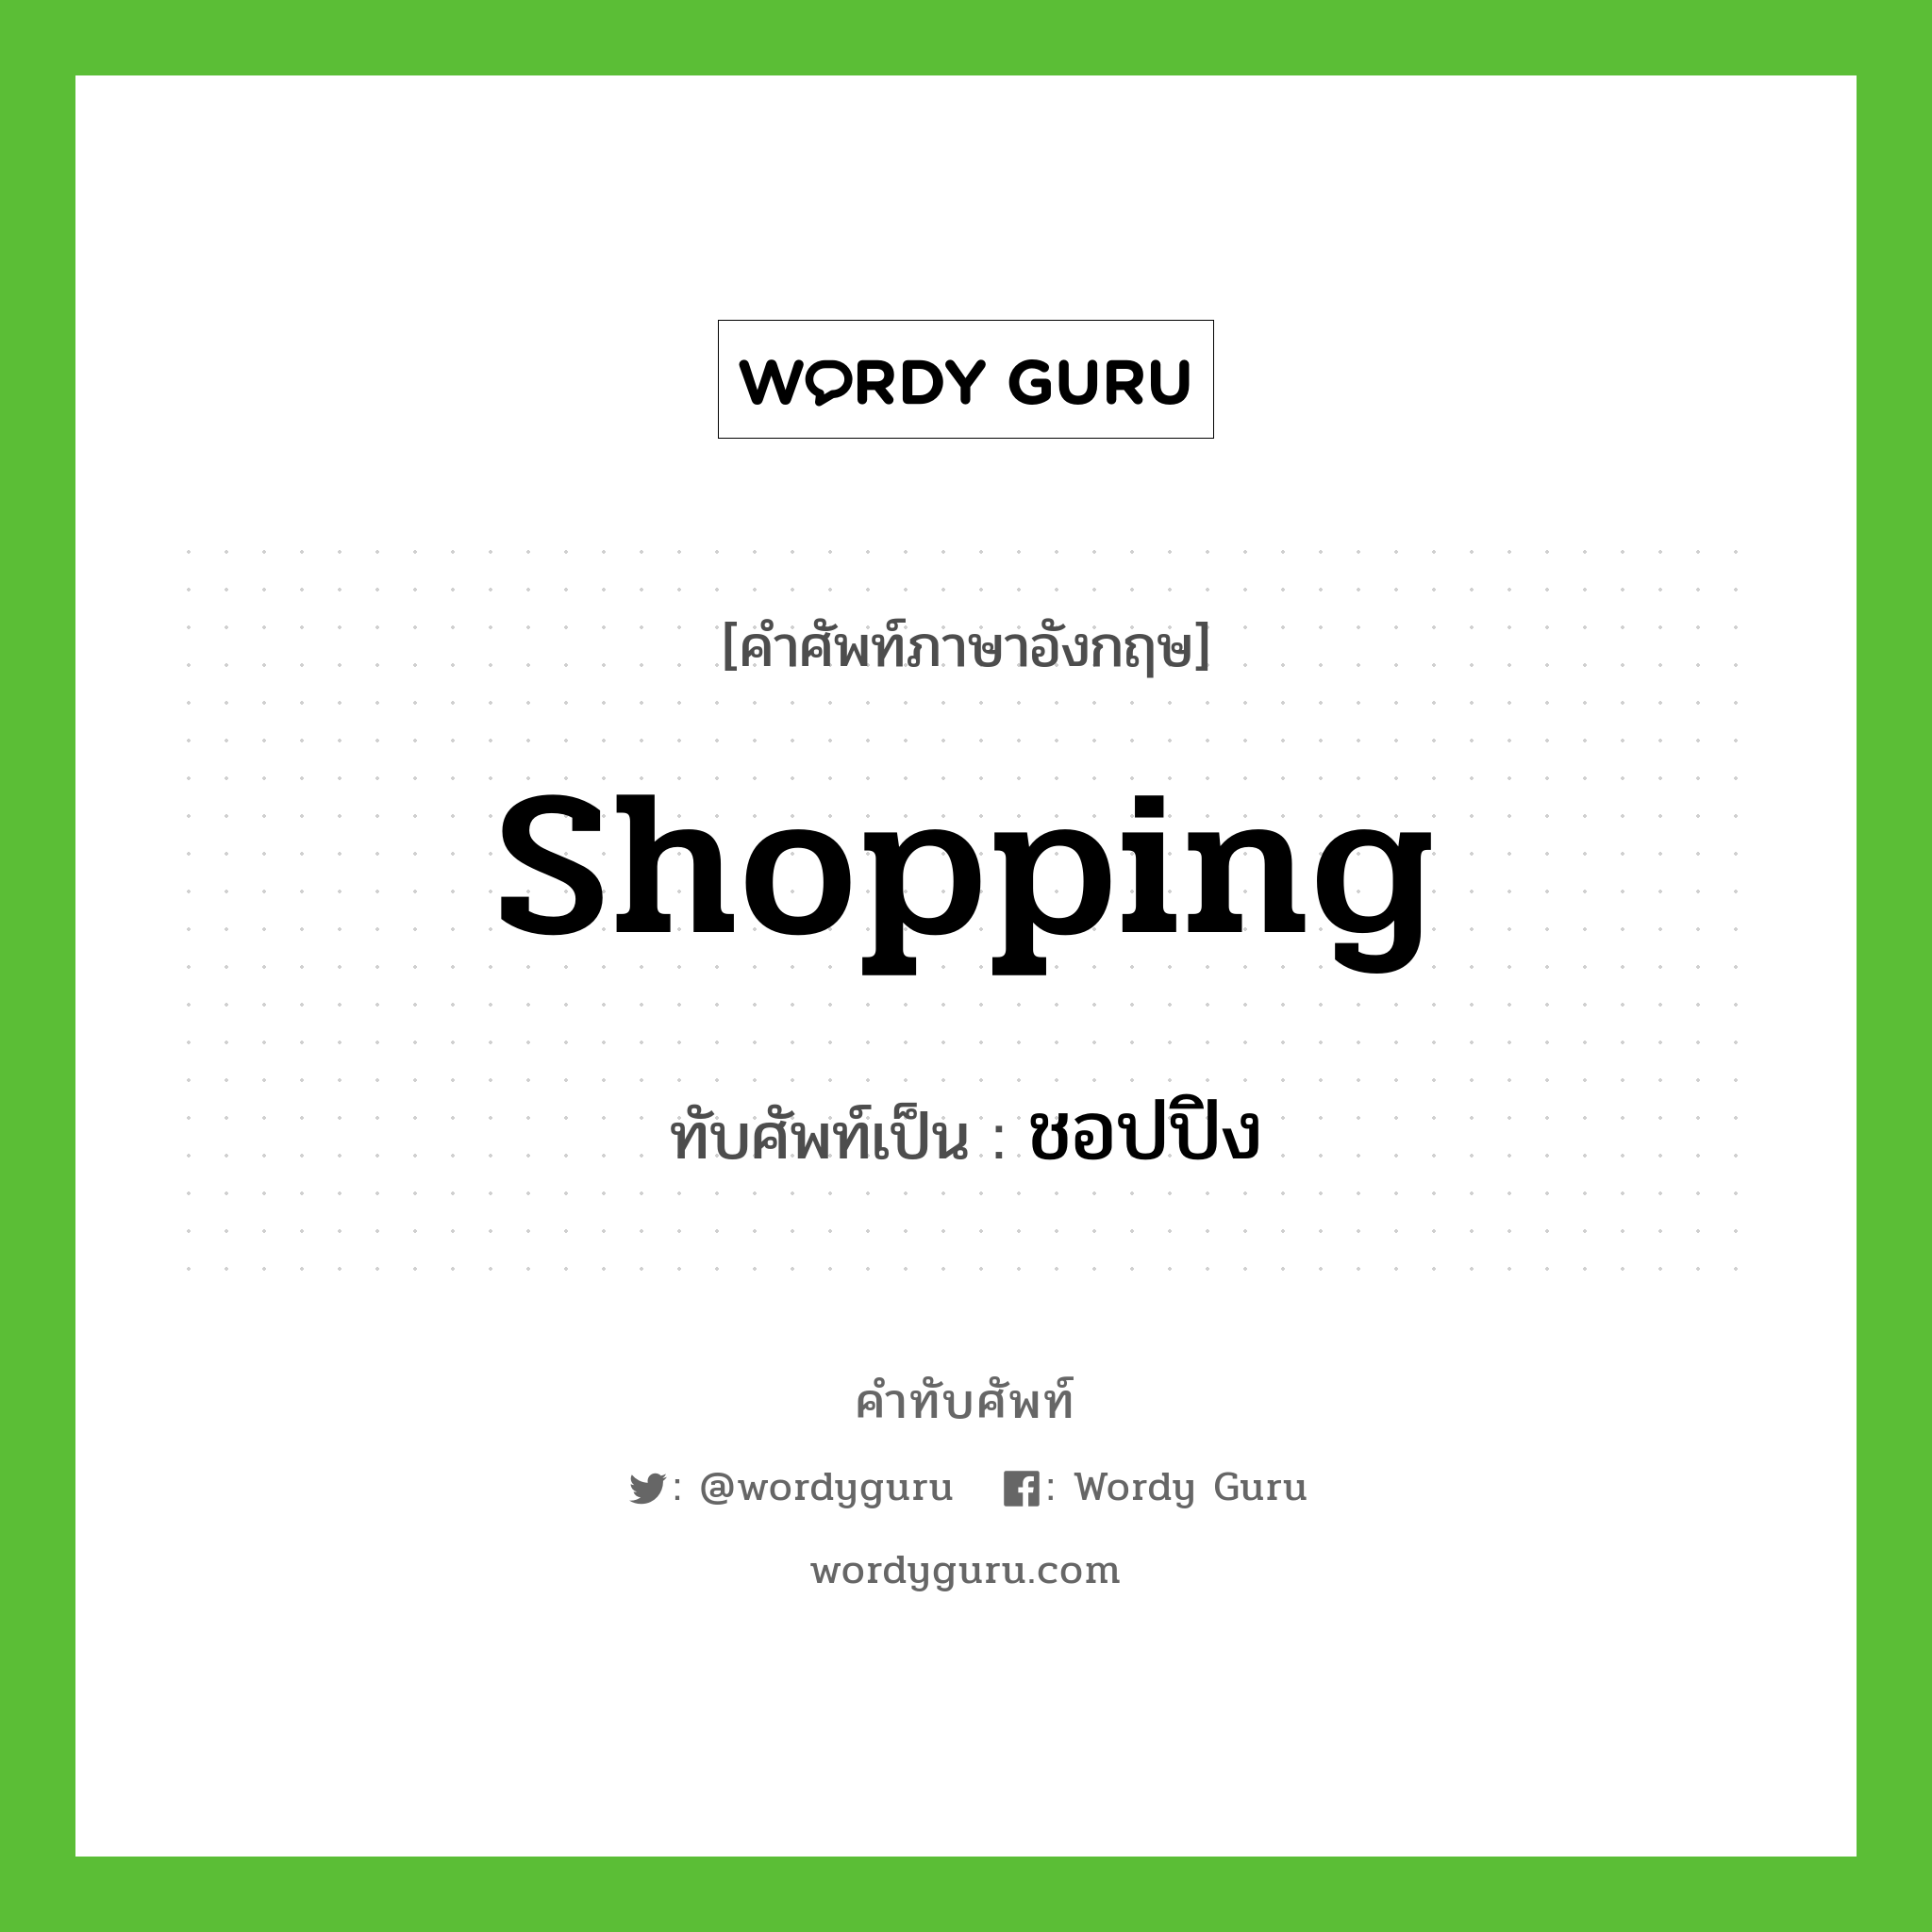 shopping เขียนเป็นคำไทยว่าอะไร?, คำศัพท์ภาษาอังกฤษ shopping ทับศัพท์เป็น ชอปปิง